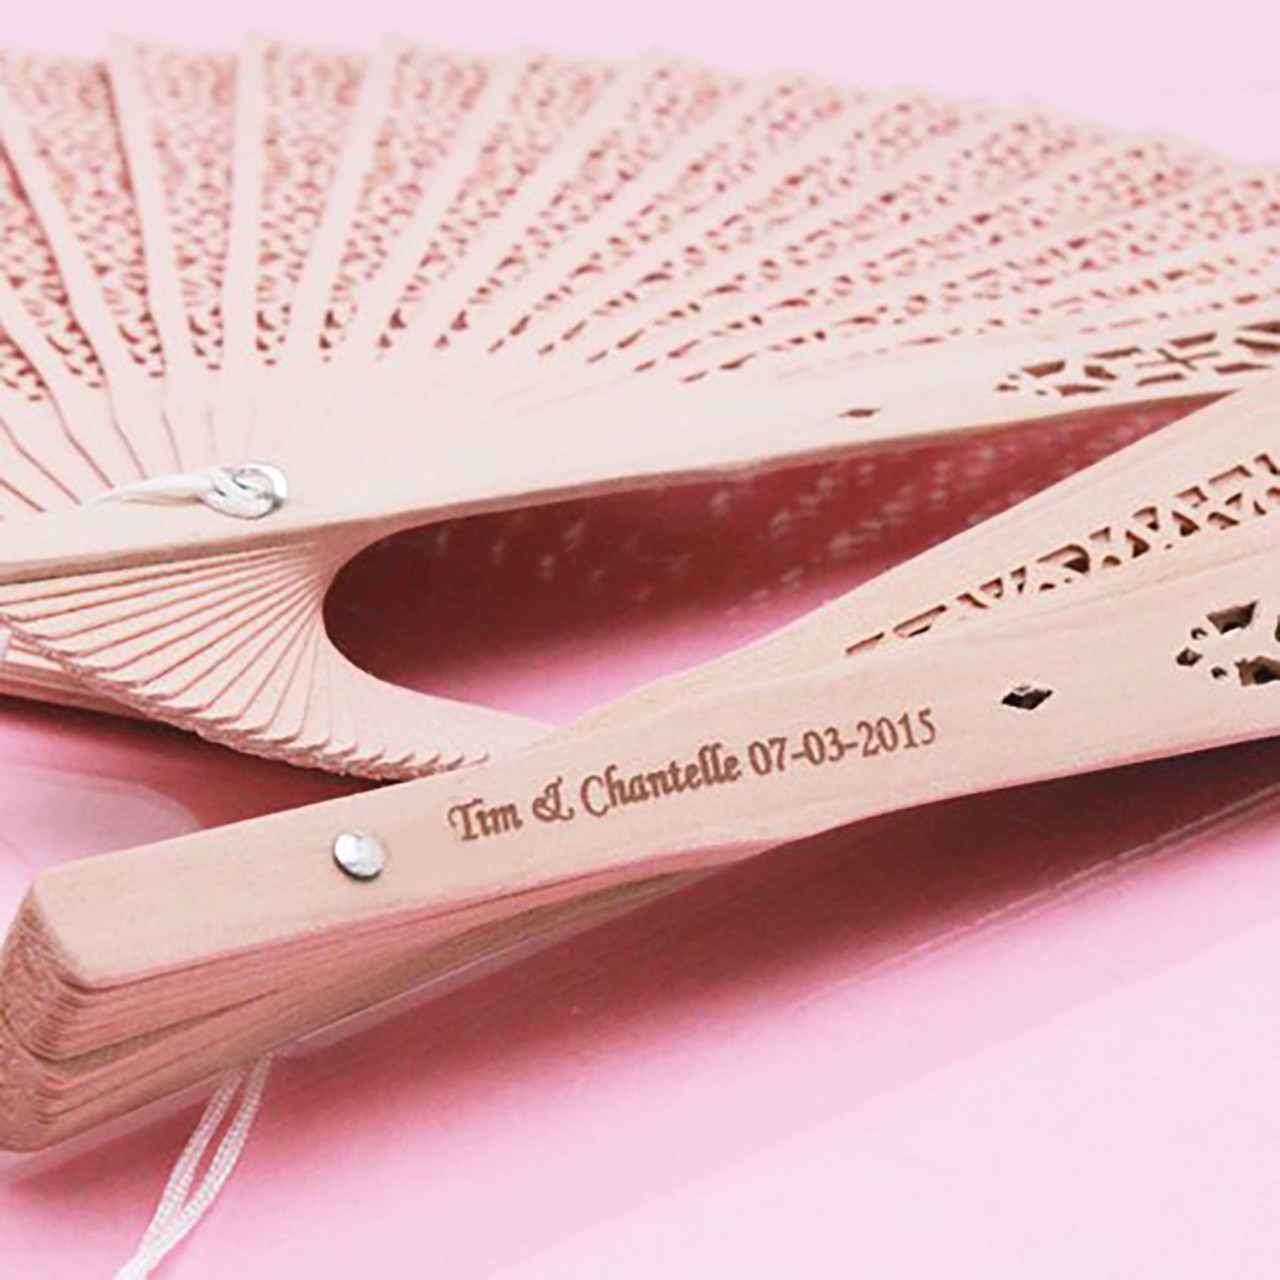 engraved sandalwood fans